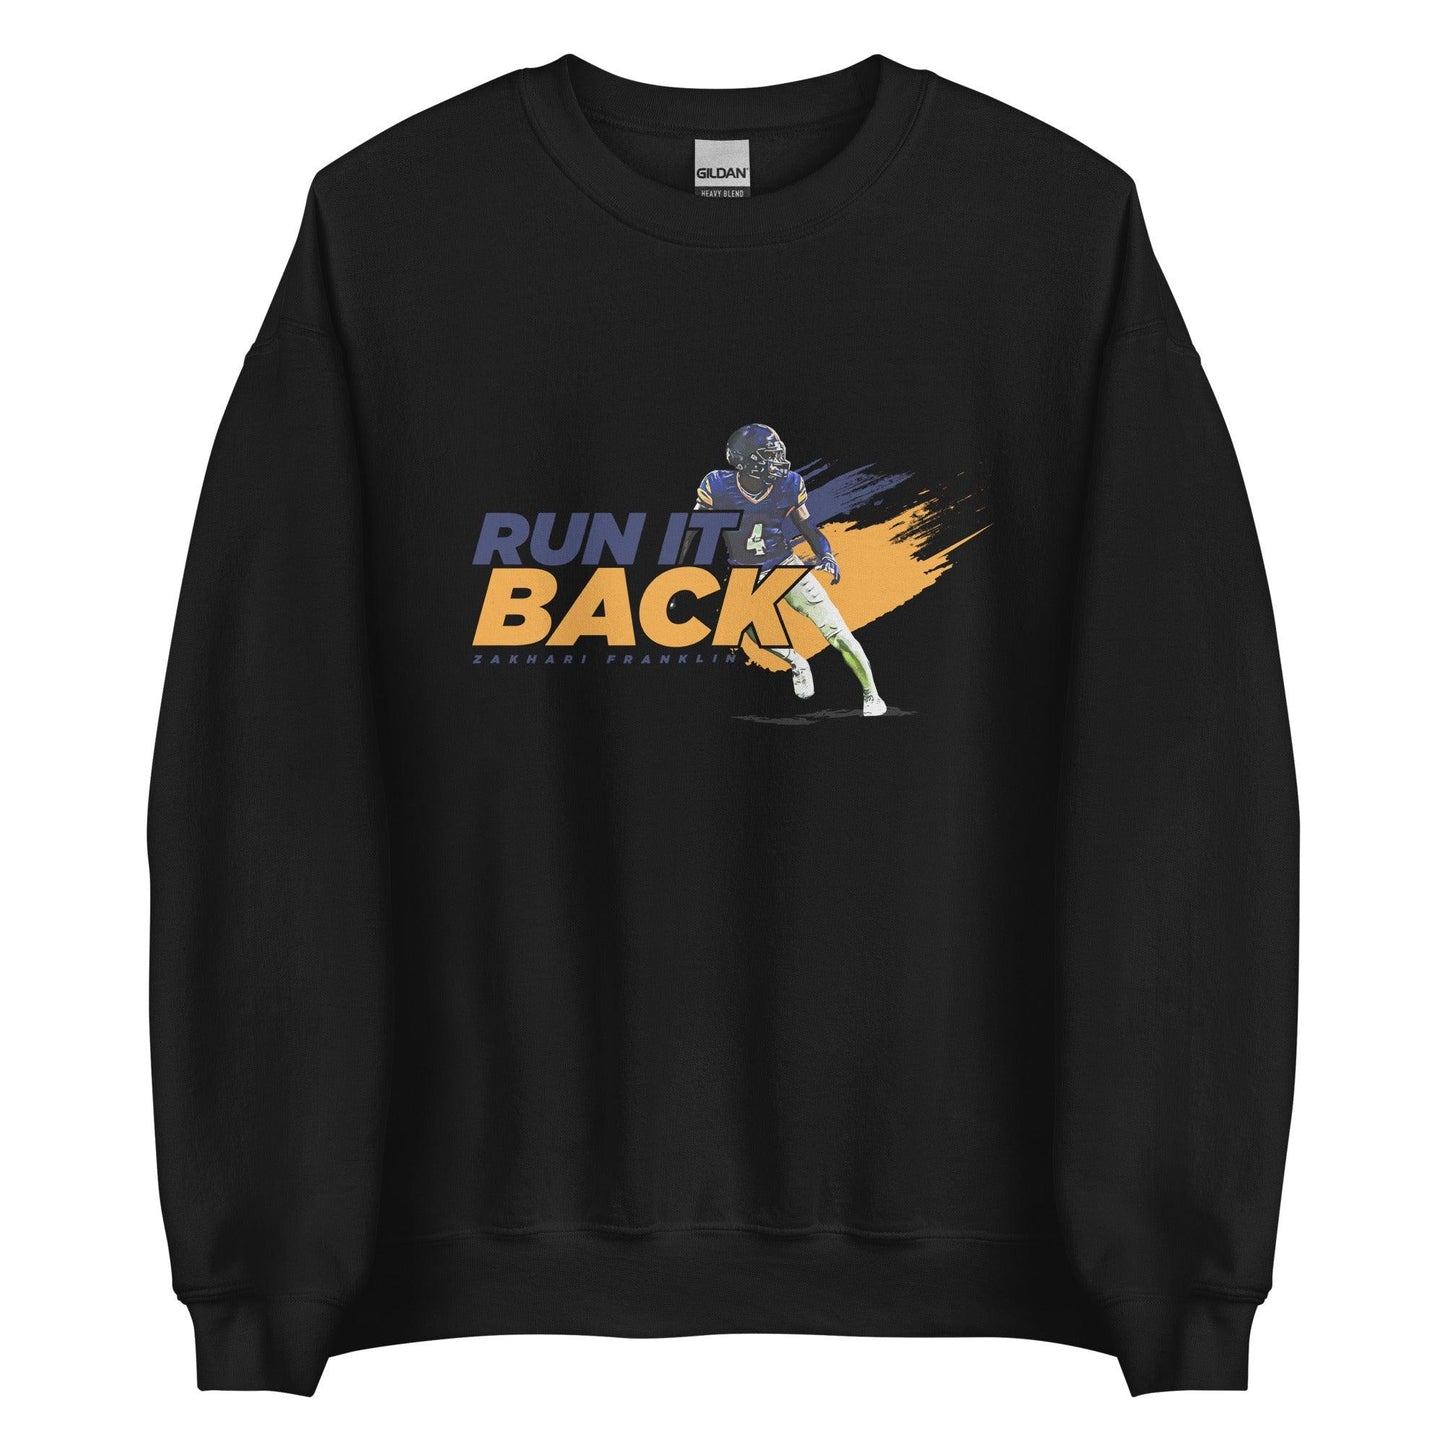 Zakhari Franklin "Run It Back" Sweatshirt - Fan Arch